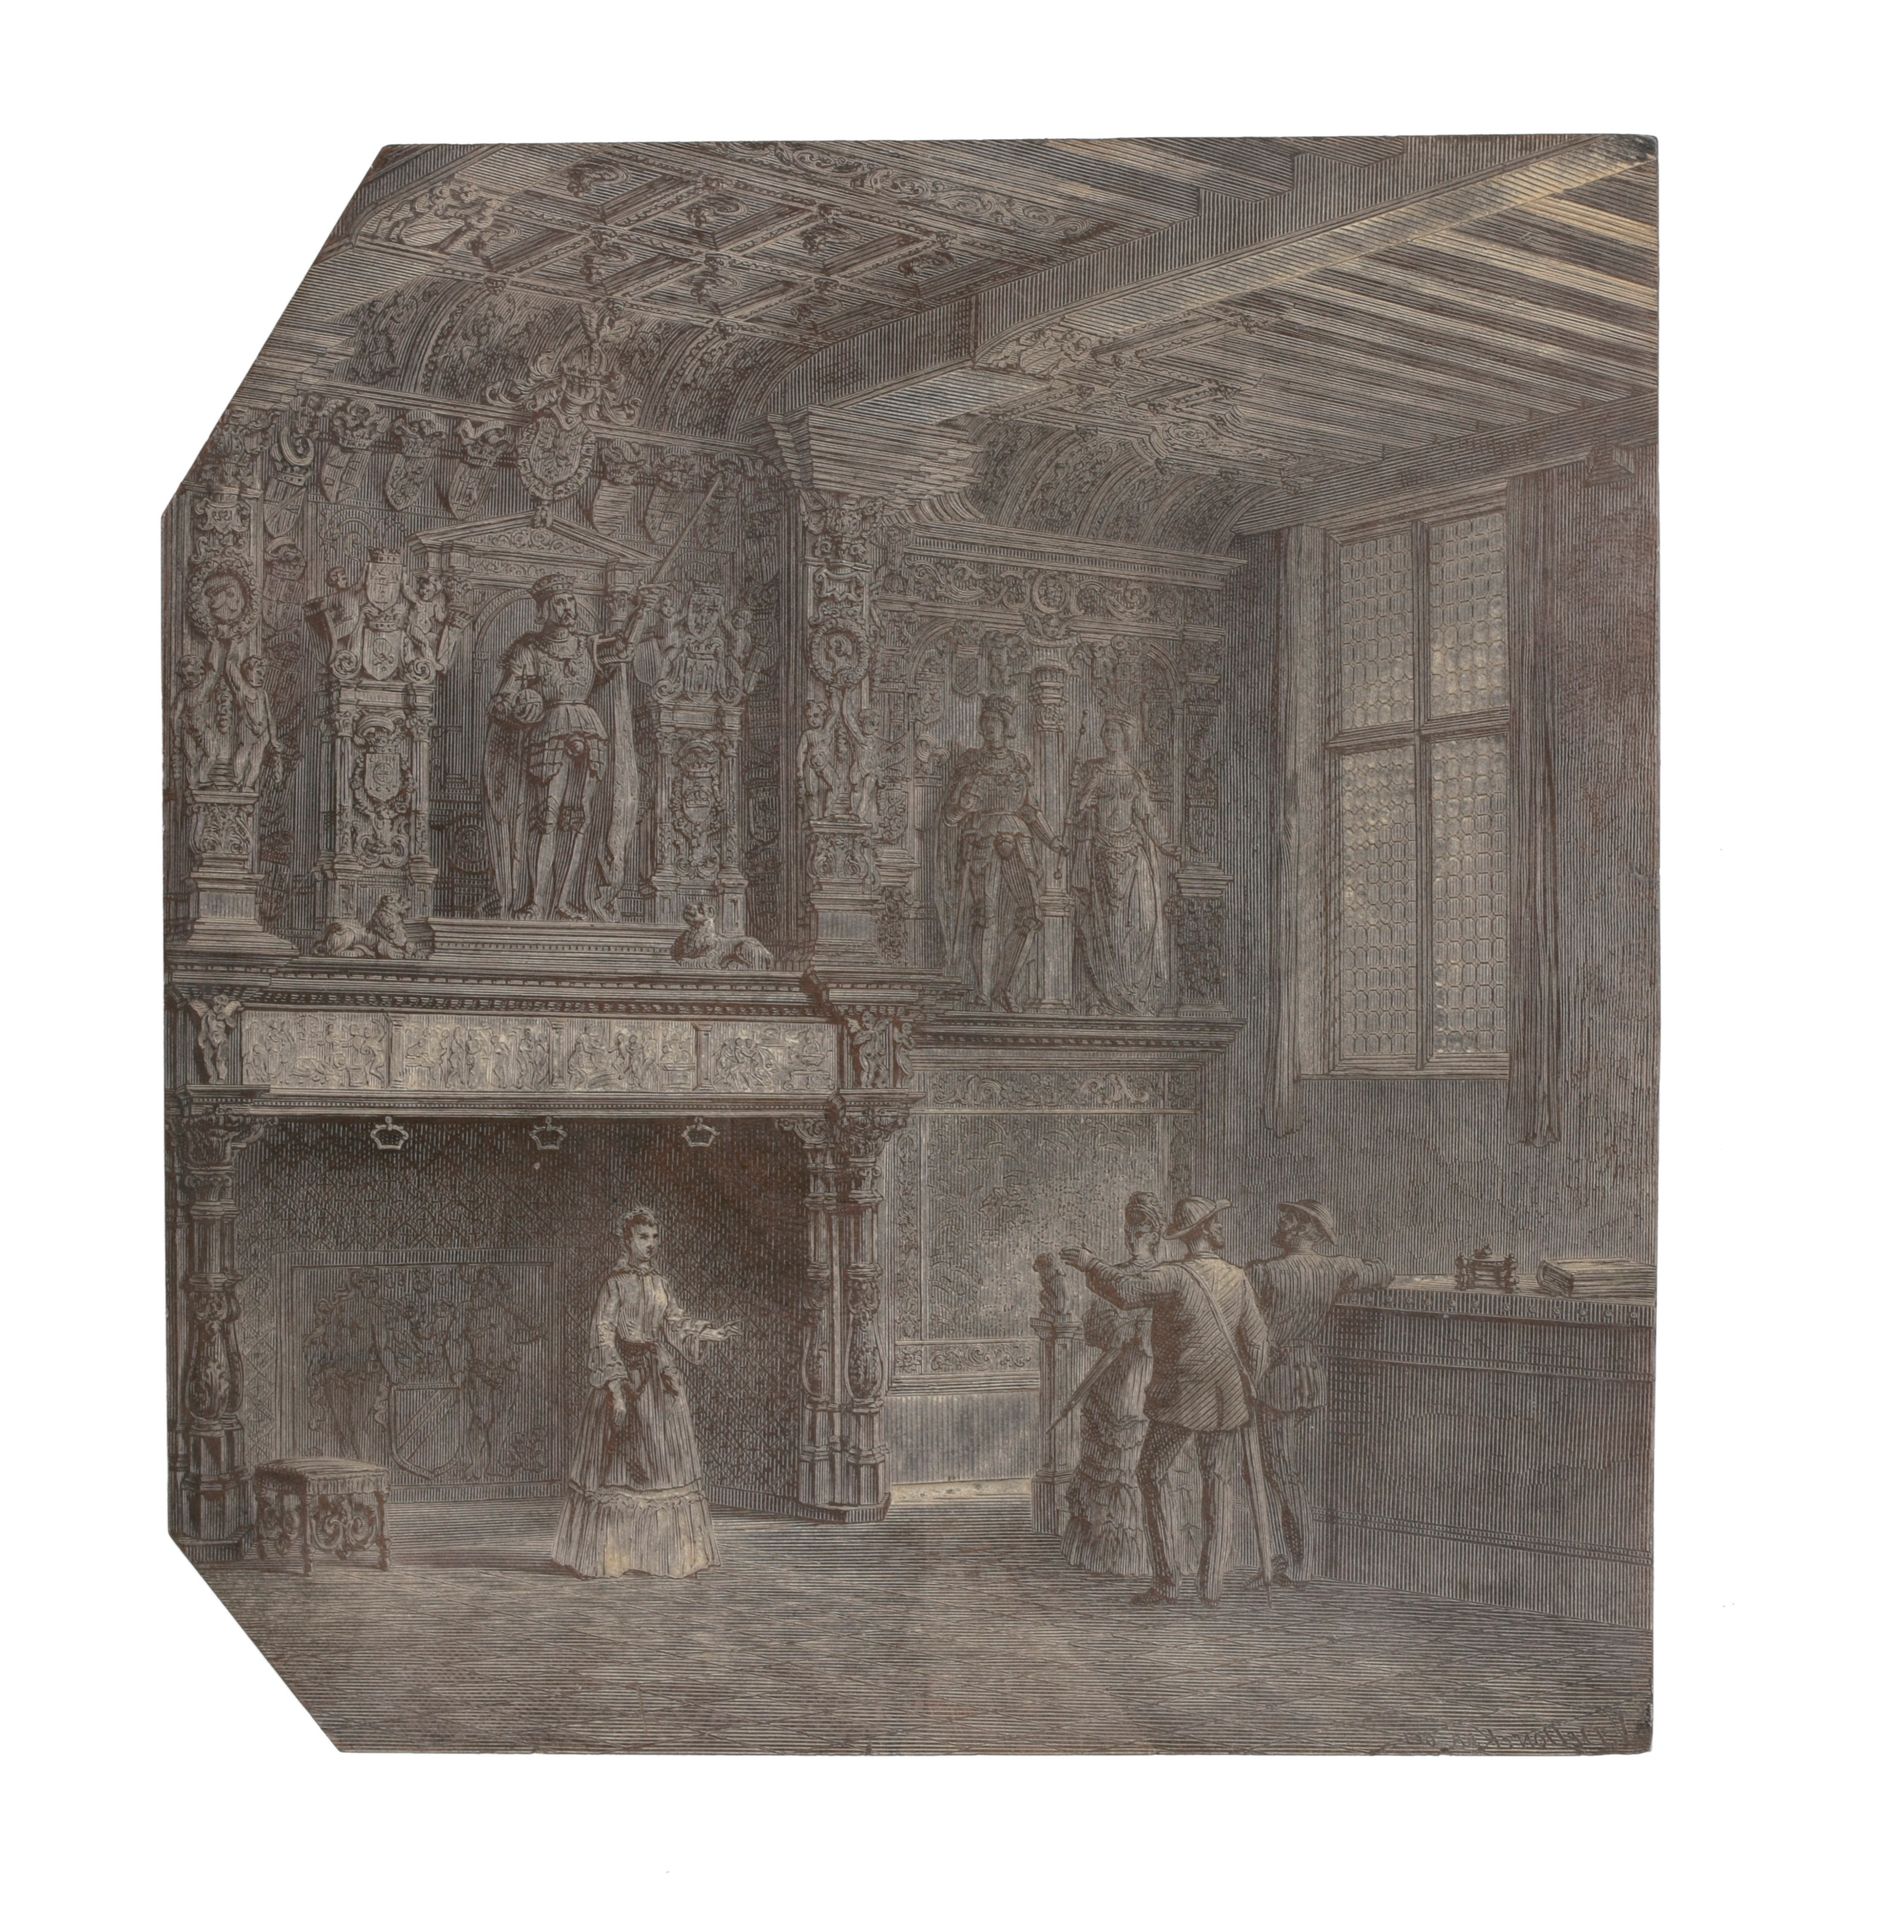 [Brugge] Houtblok met 'Schouw van het Brugse Vrije', 1850 circa

Getekend 'V. De&hellip;